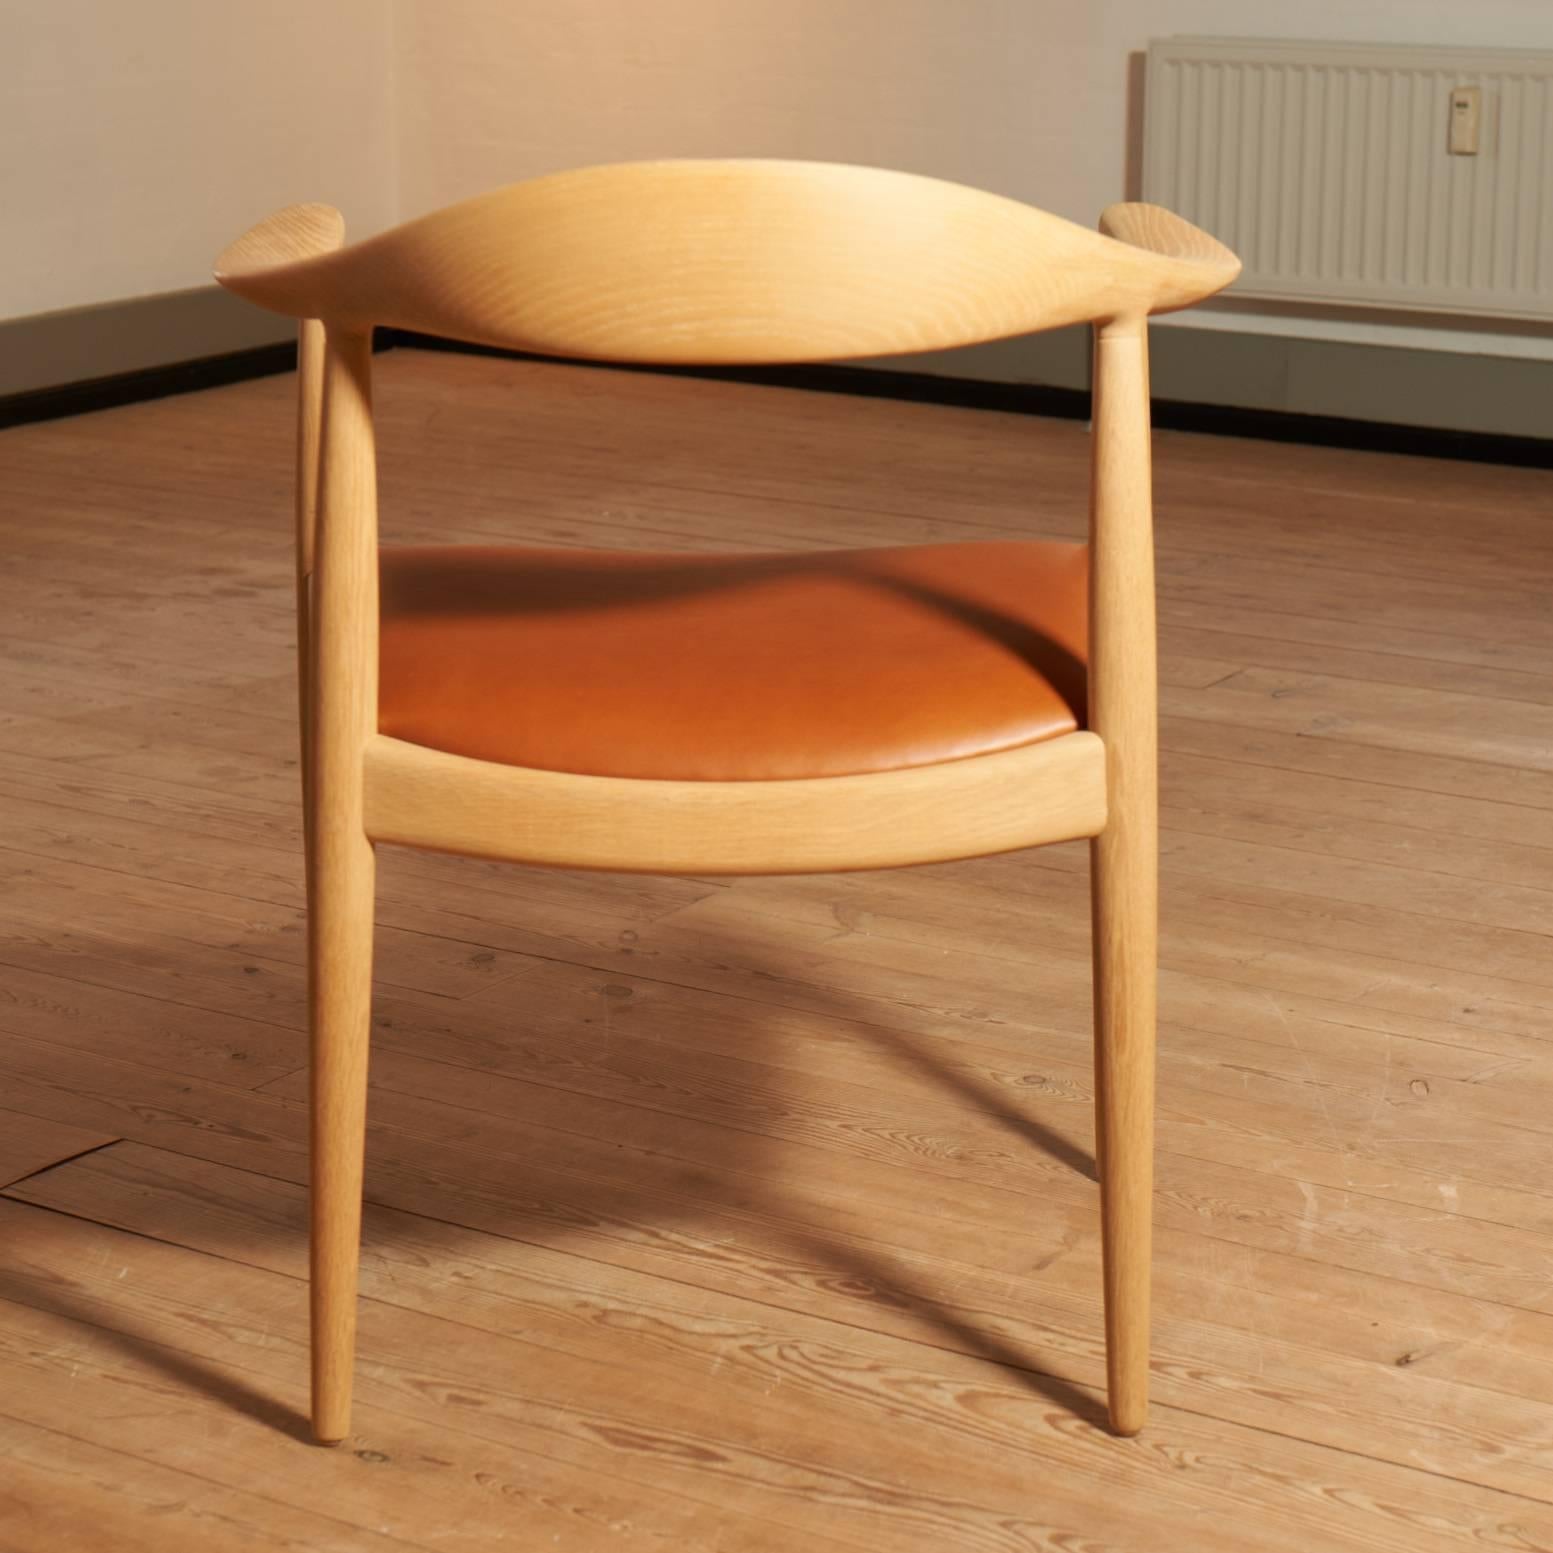 Danish Hans J. Wegner, The Chair For Sale